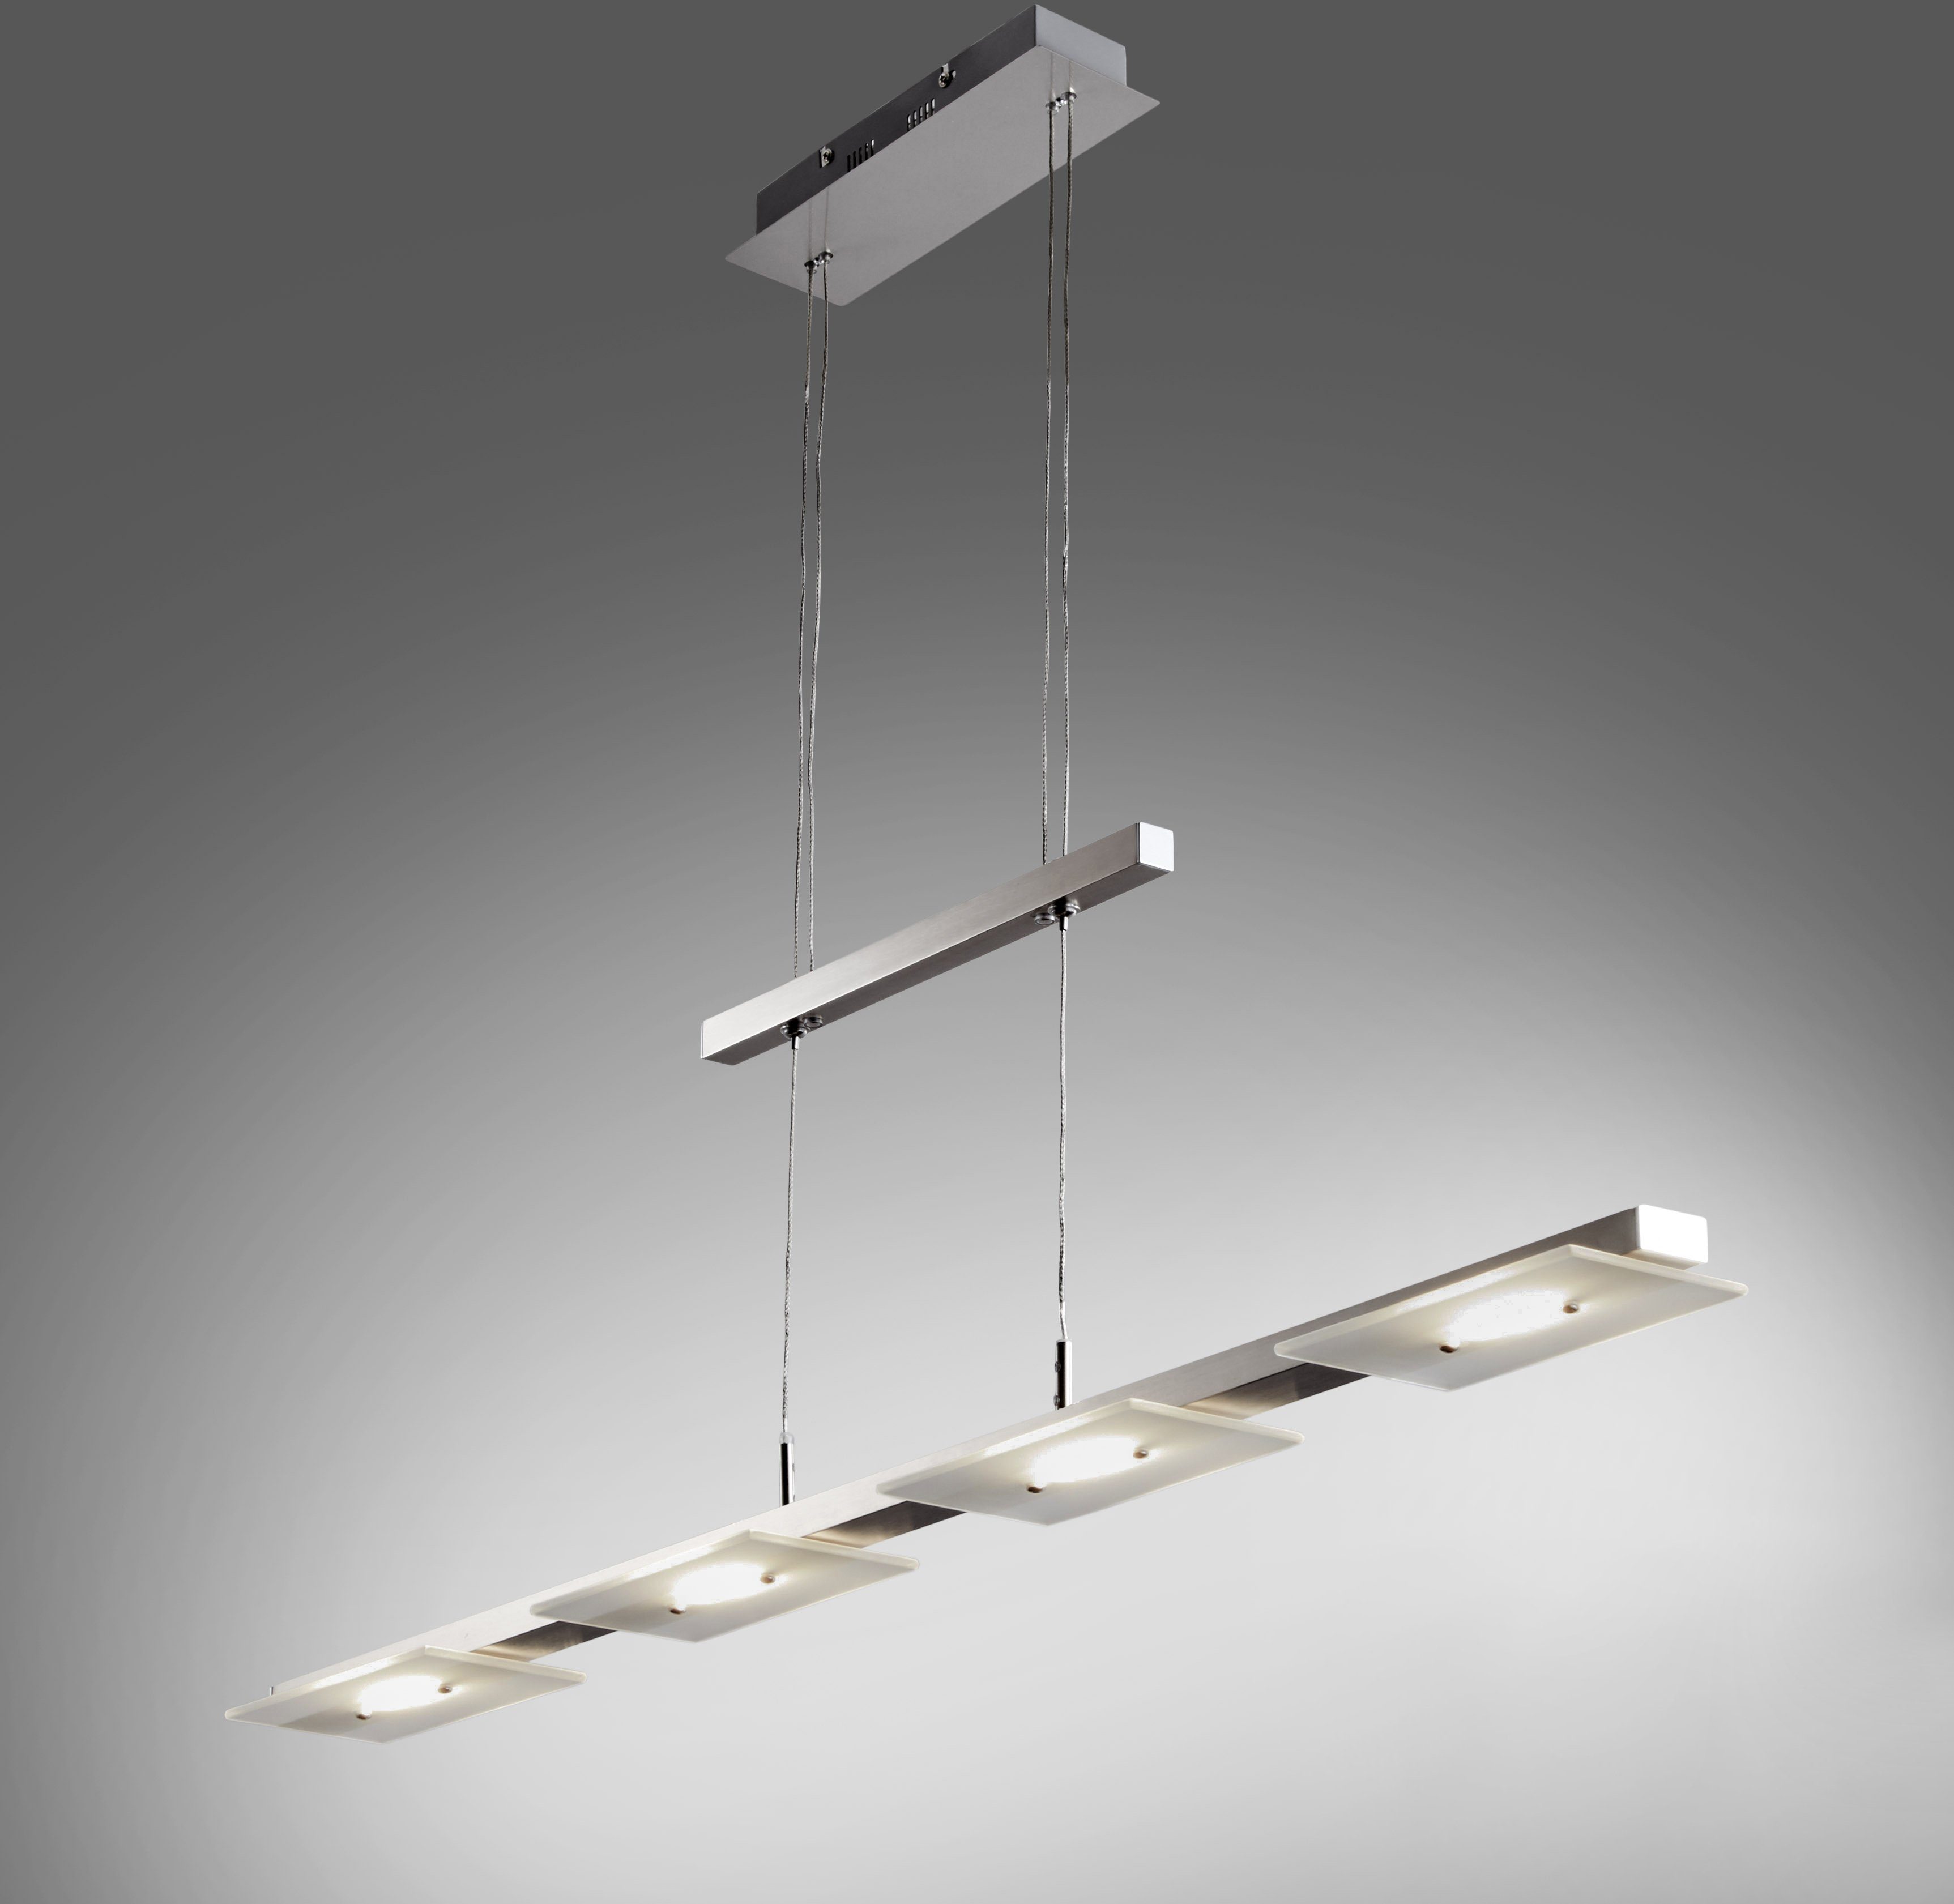 Design LED Hänge Decken Beleuchtung Küchen Zug Pendel Lampe verstellbar Chrom 